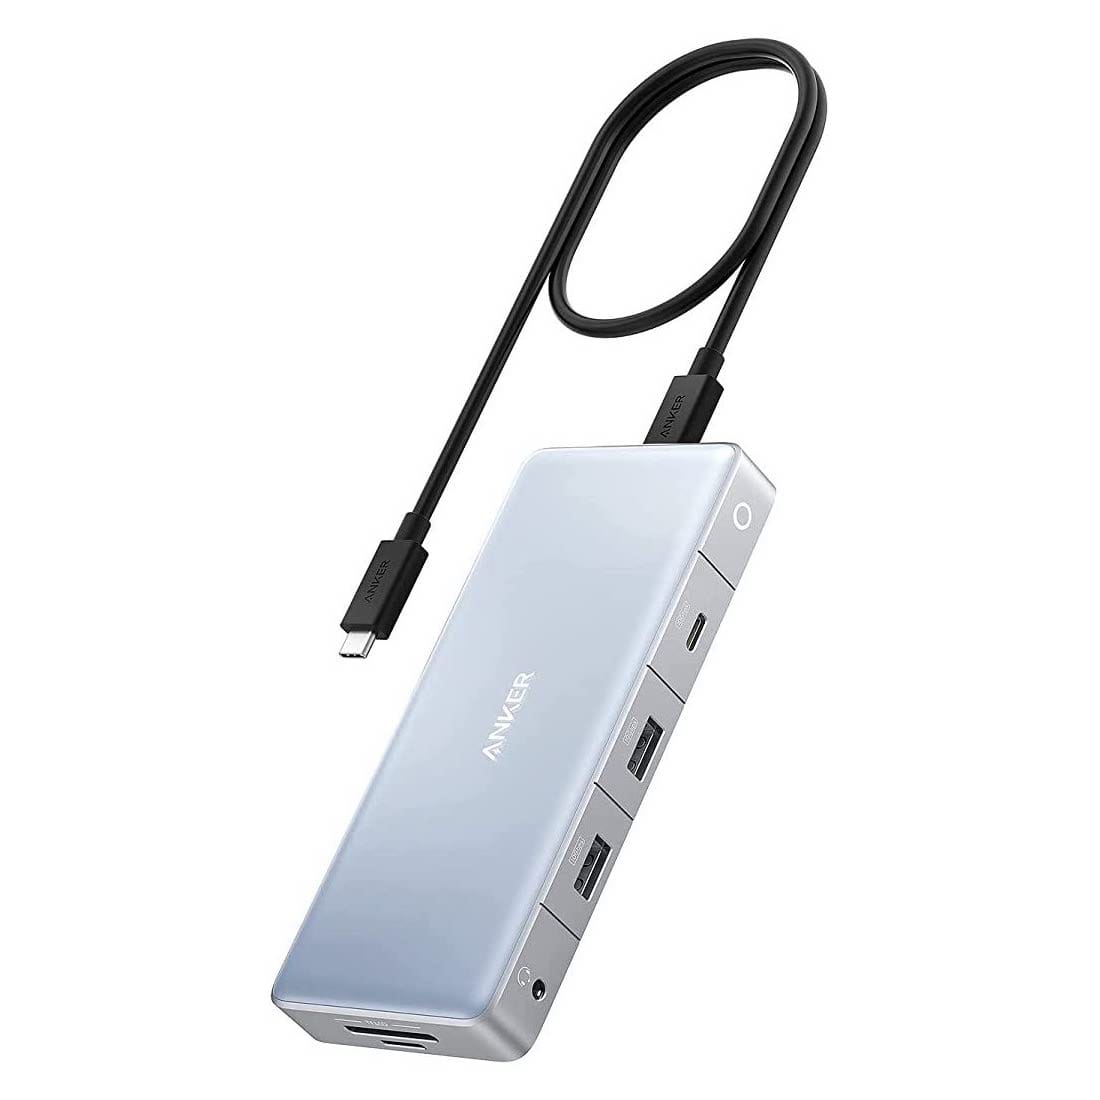 Anker、12-in-1 USB-Cハブを発売